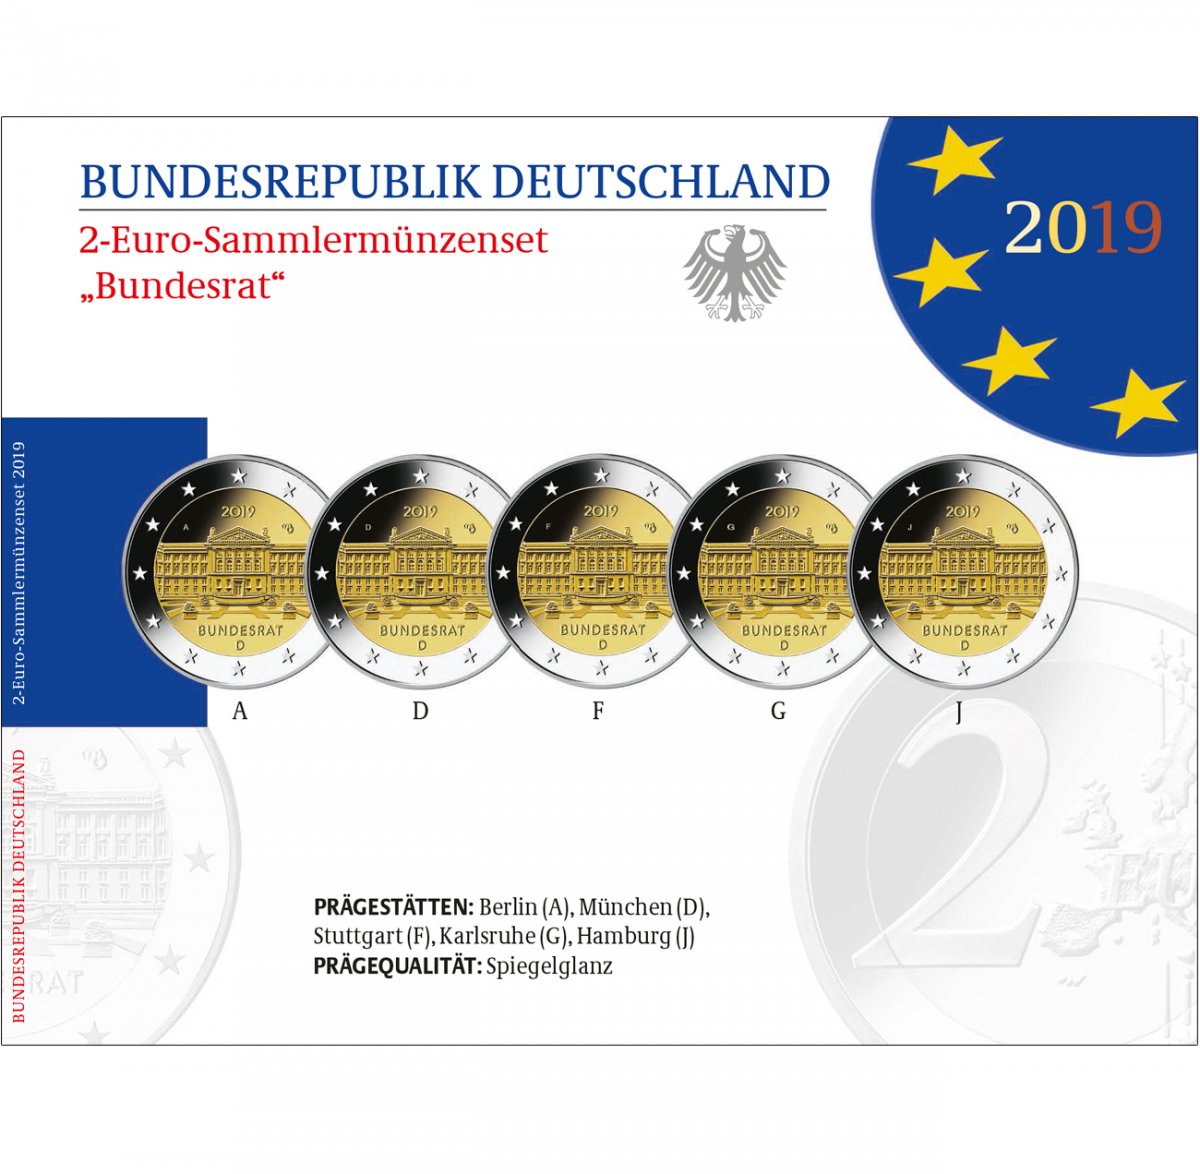 2 euro special set 2019 "Bundesrat" 